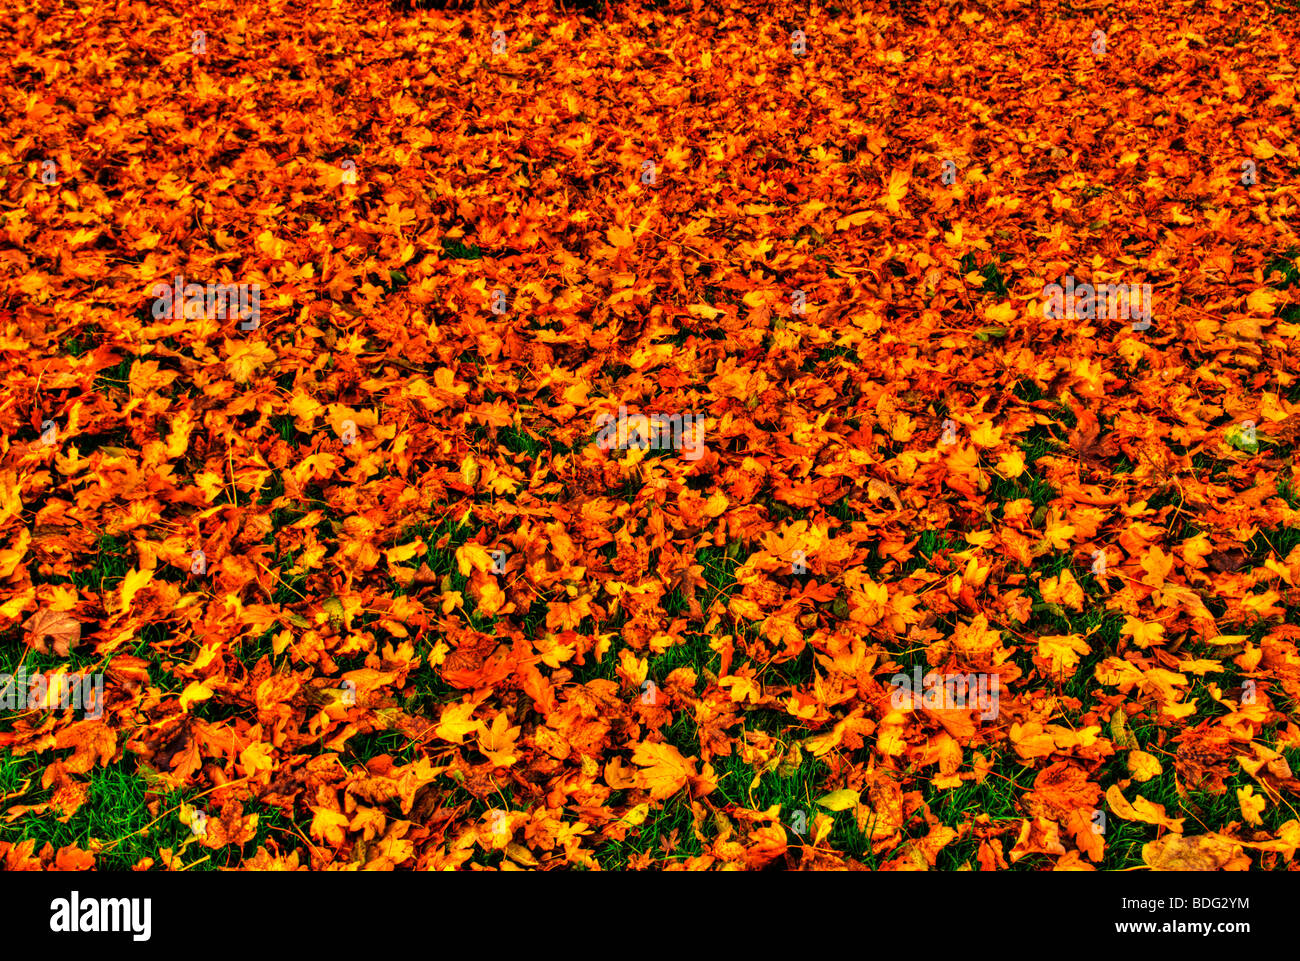 HDR - High Dynamic Range Immagine di foglie di autunno sul pavimento, England, Regno Unito Foto Stock